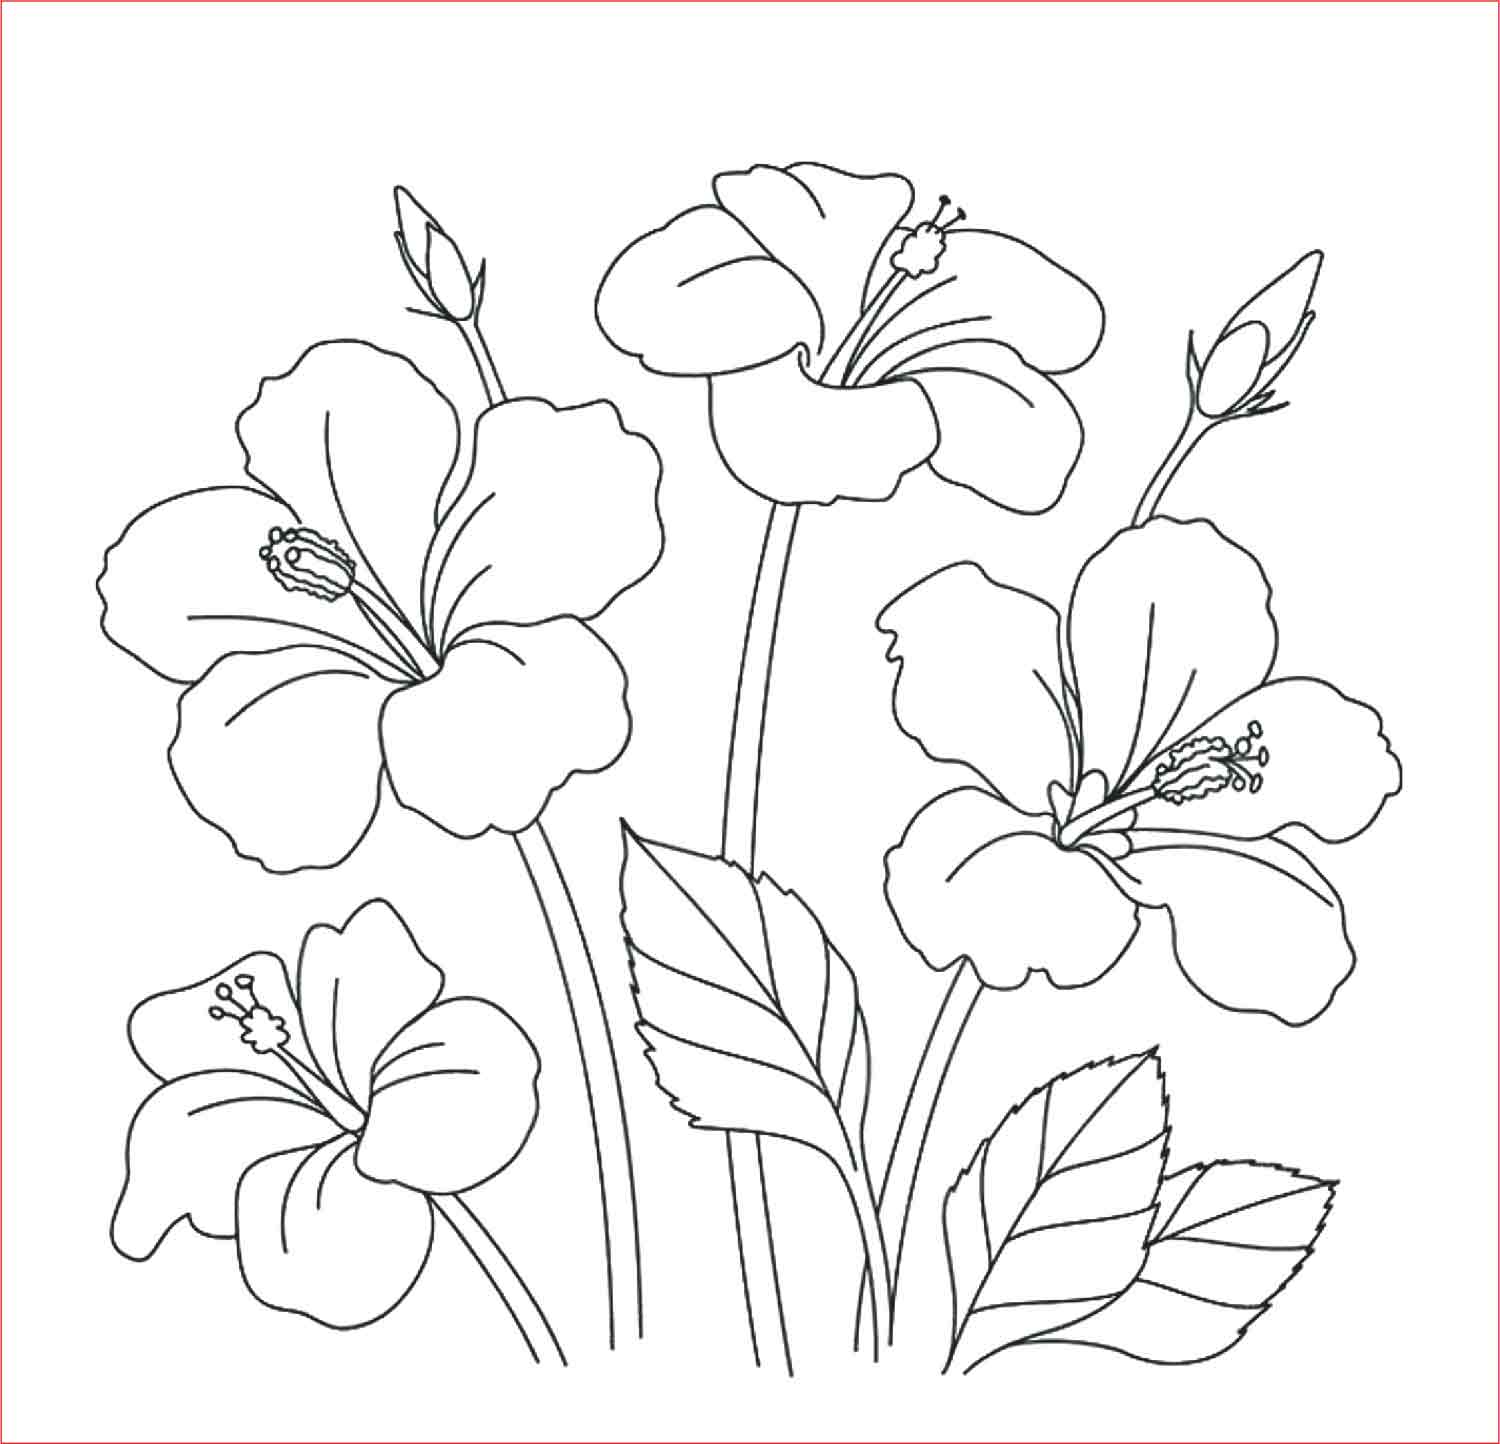 Gambar 2 Dimensi Bunga Yang Mudah Ditiru Dan Berwarna - KibrisPDR